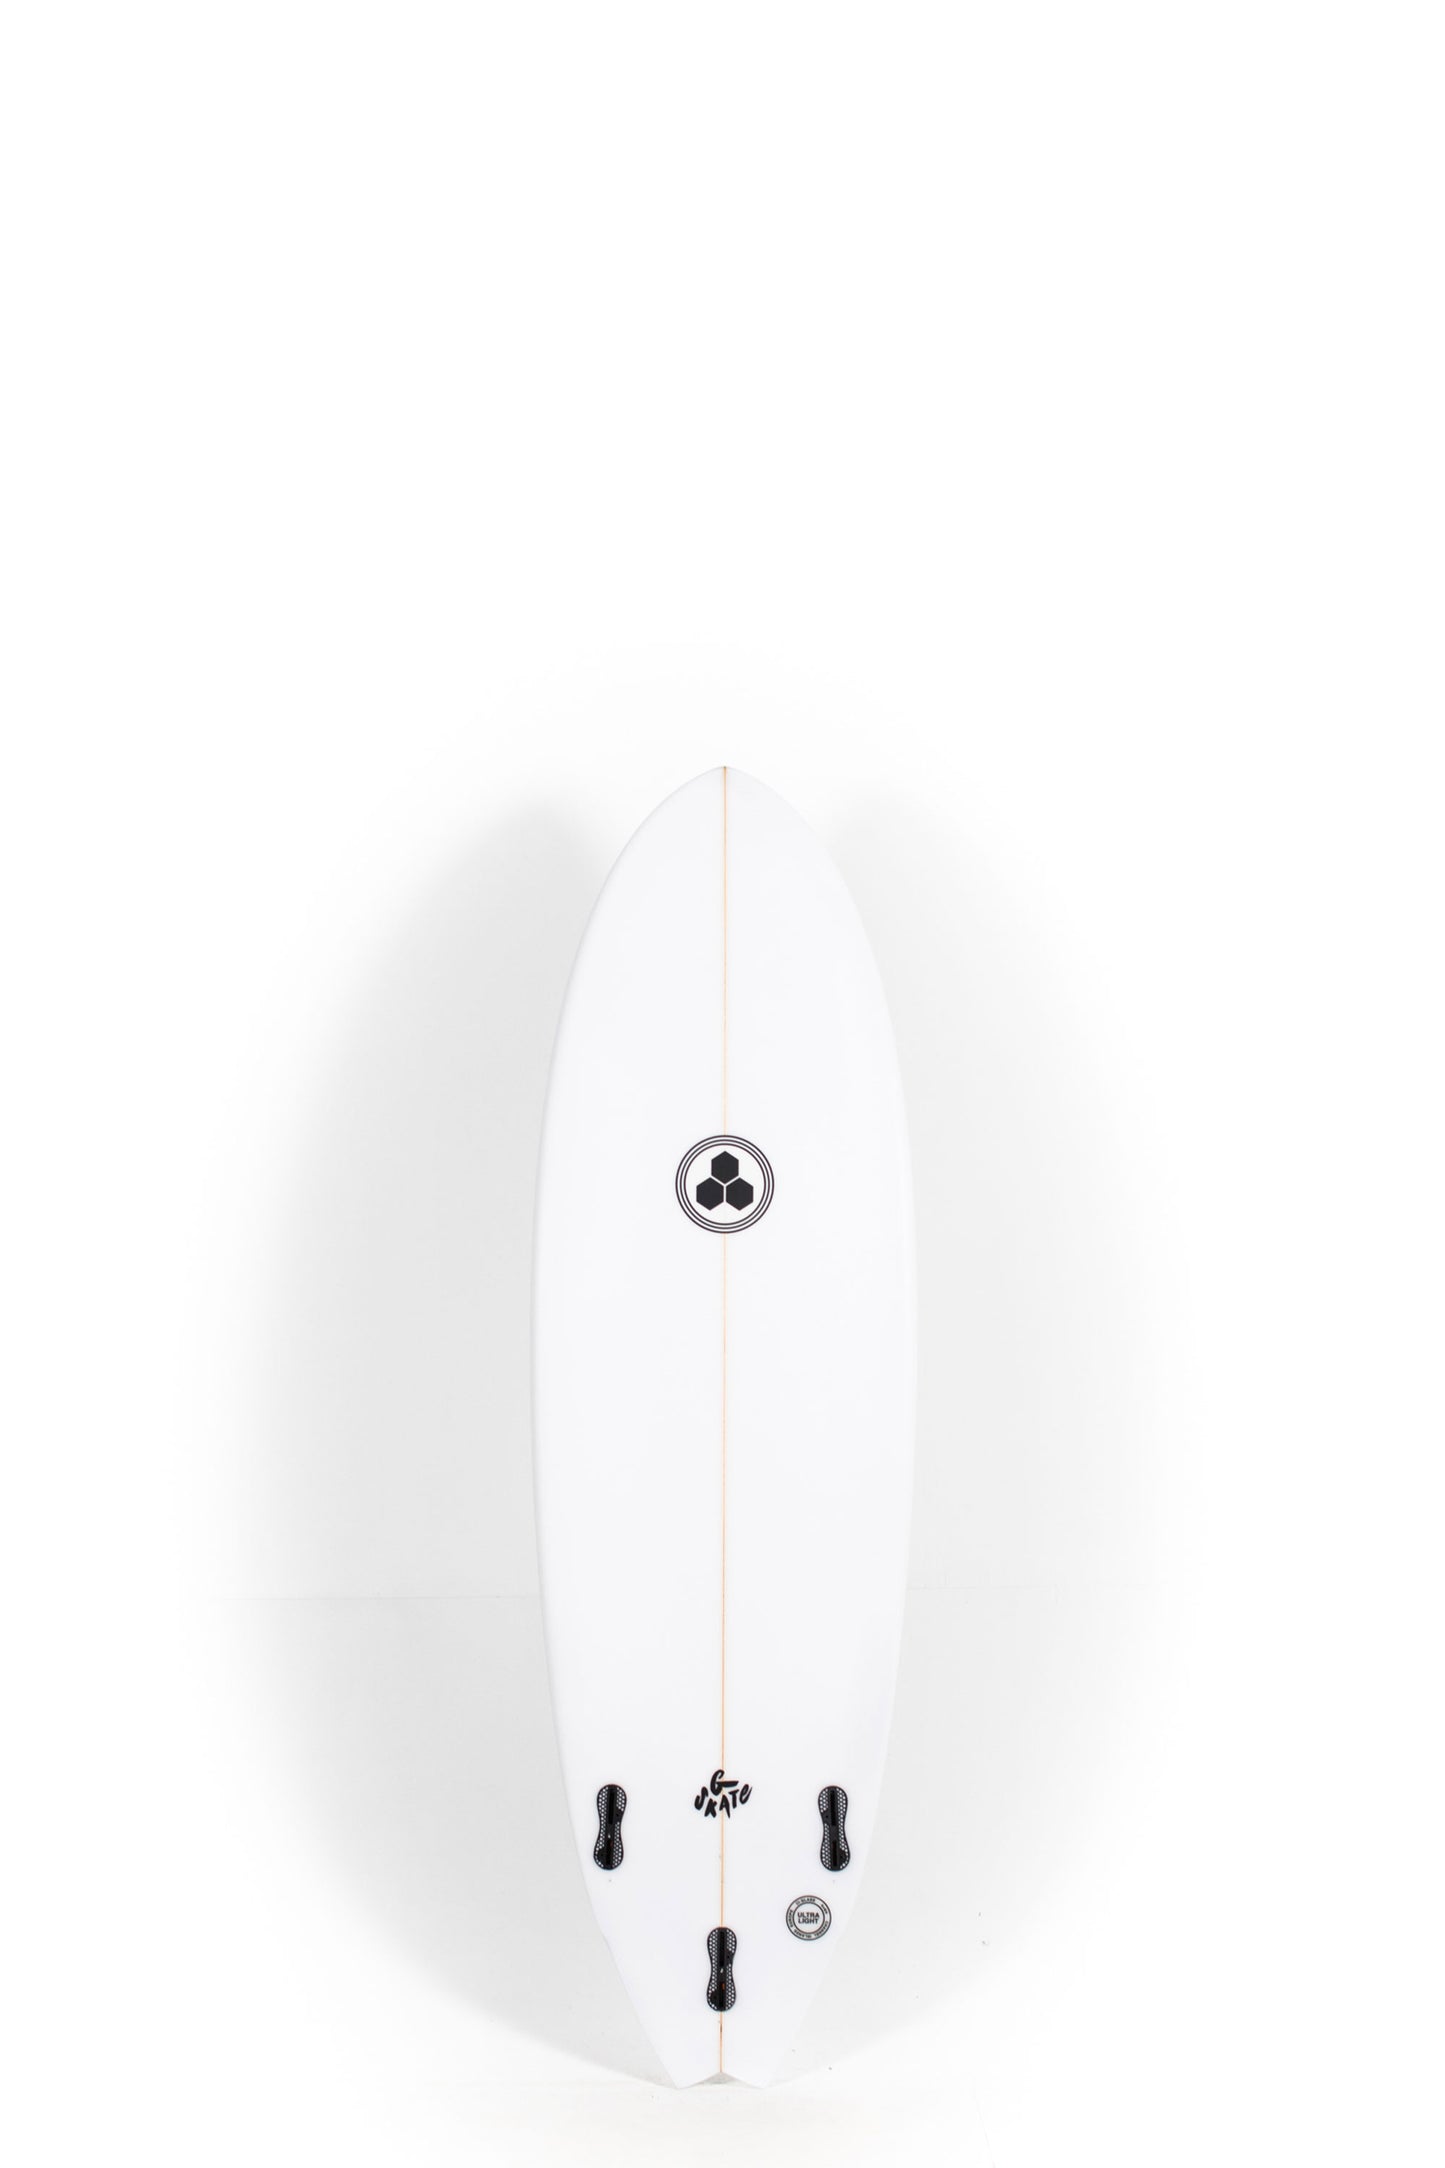 Pukas Surf Shop Channel Islands - G-Skate by Al Merrick - 5'8" x 19 5/8 x 2 1/2 - 31.4L - CI26678